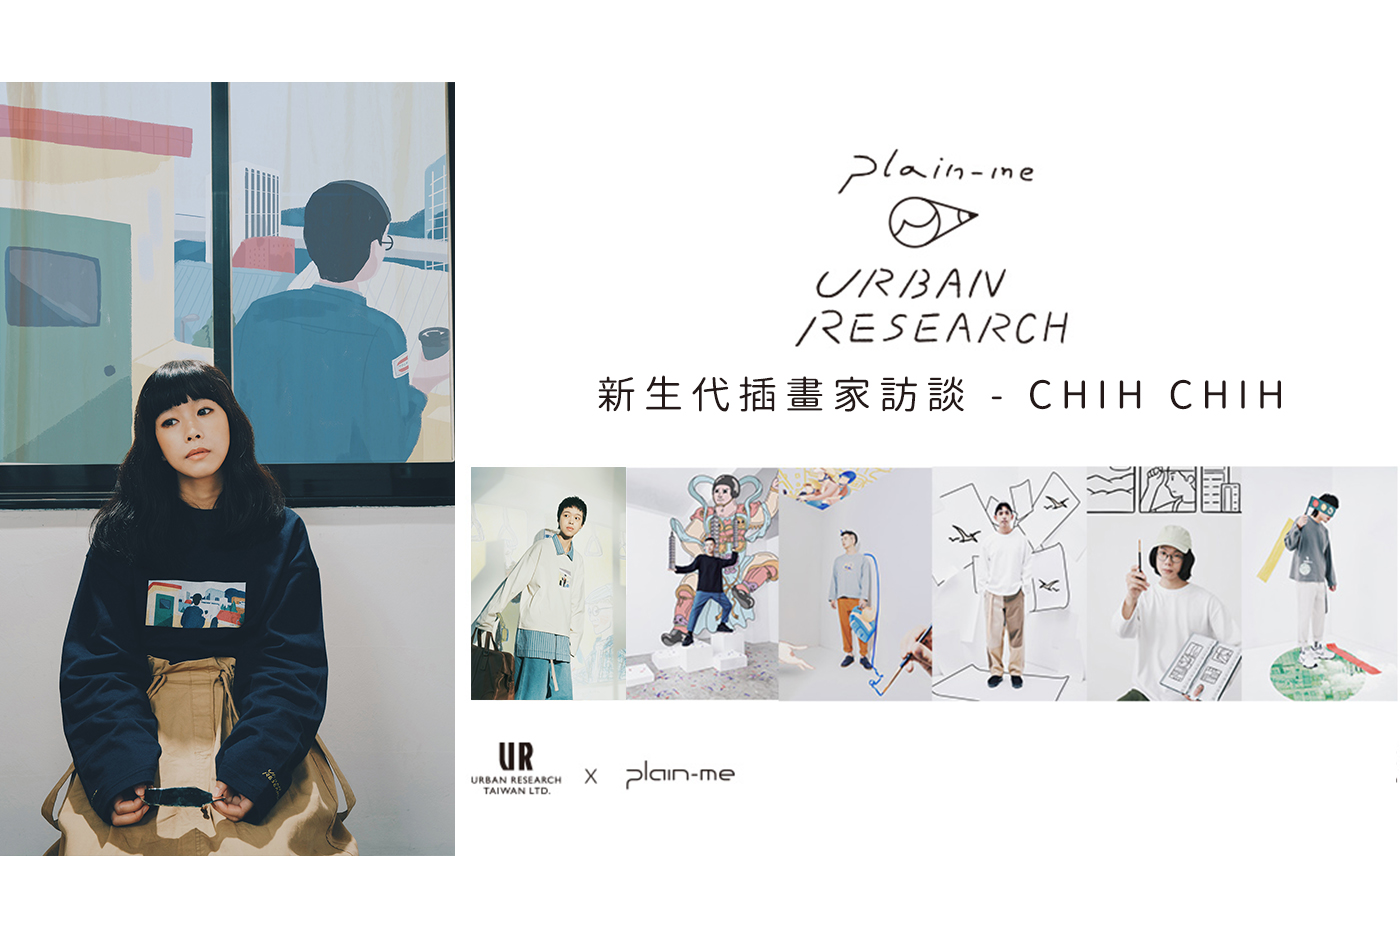 插畫家,台灣,城市,新生代插畫家,plain-me,URBAN RESEARCH,CHIH CHIH